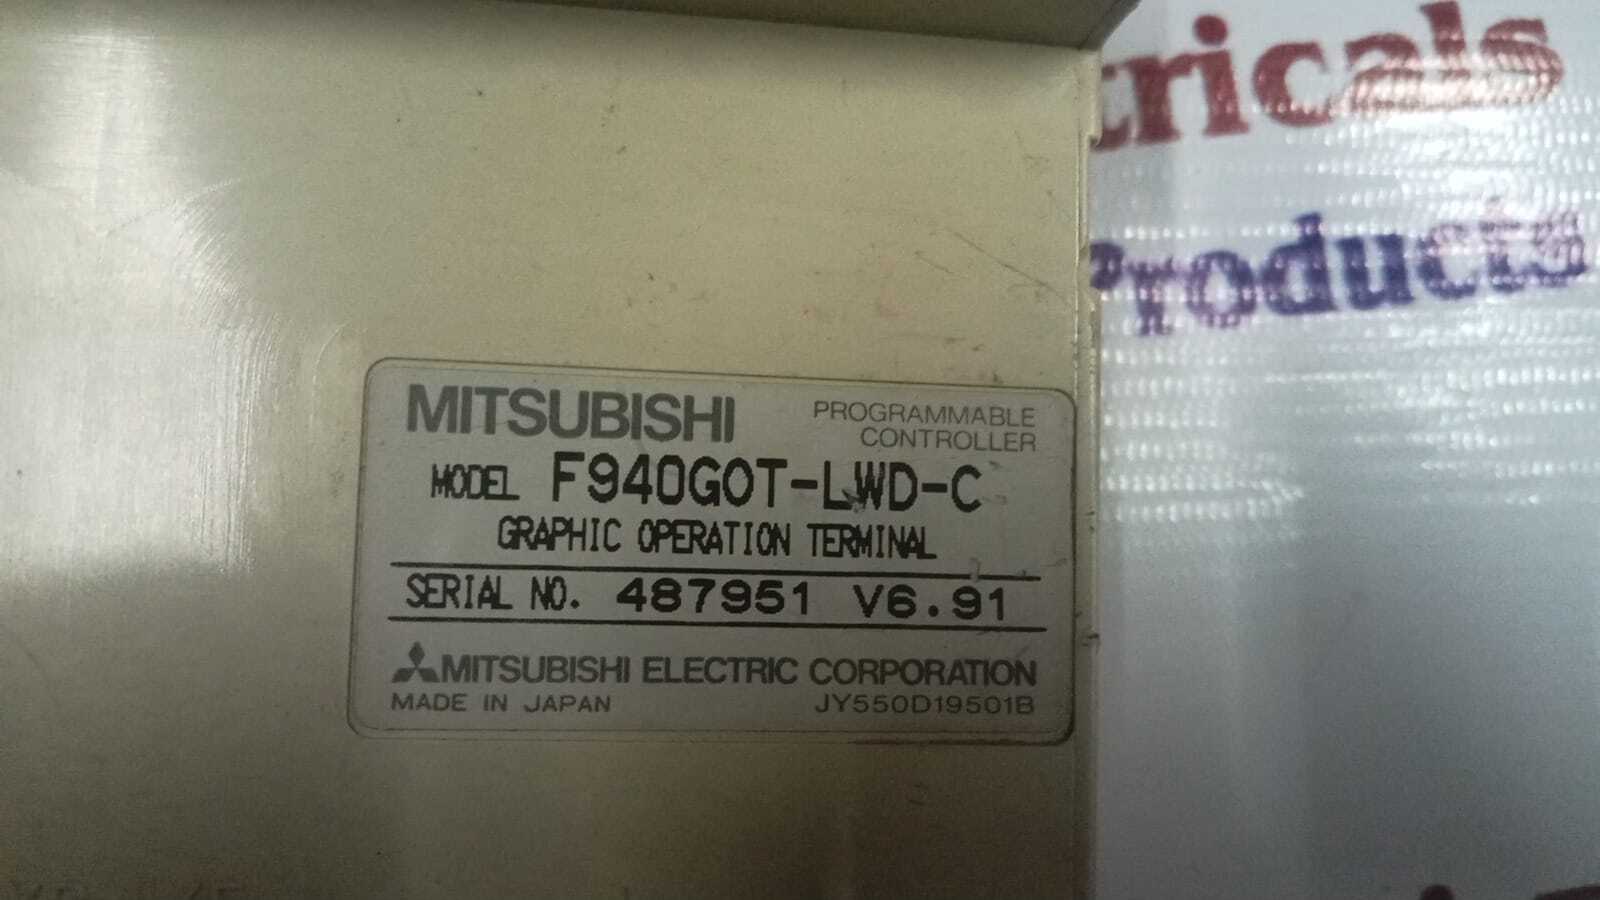 MITSUBISHI F940GOT-LWD-C HMI